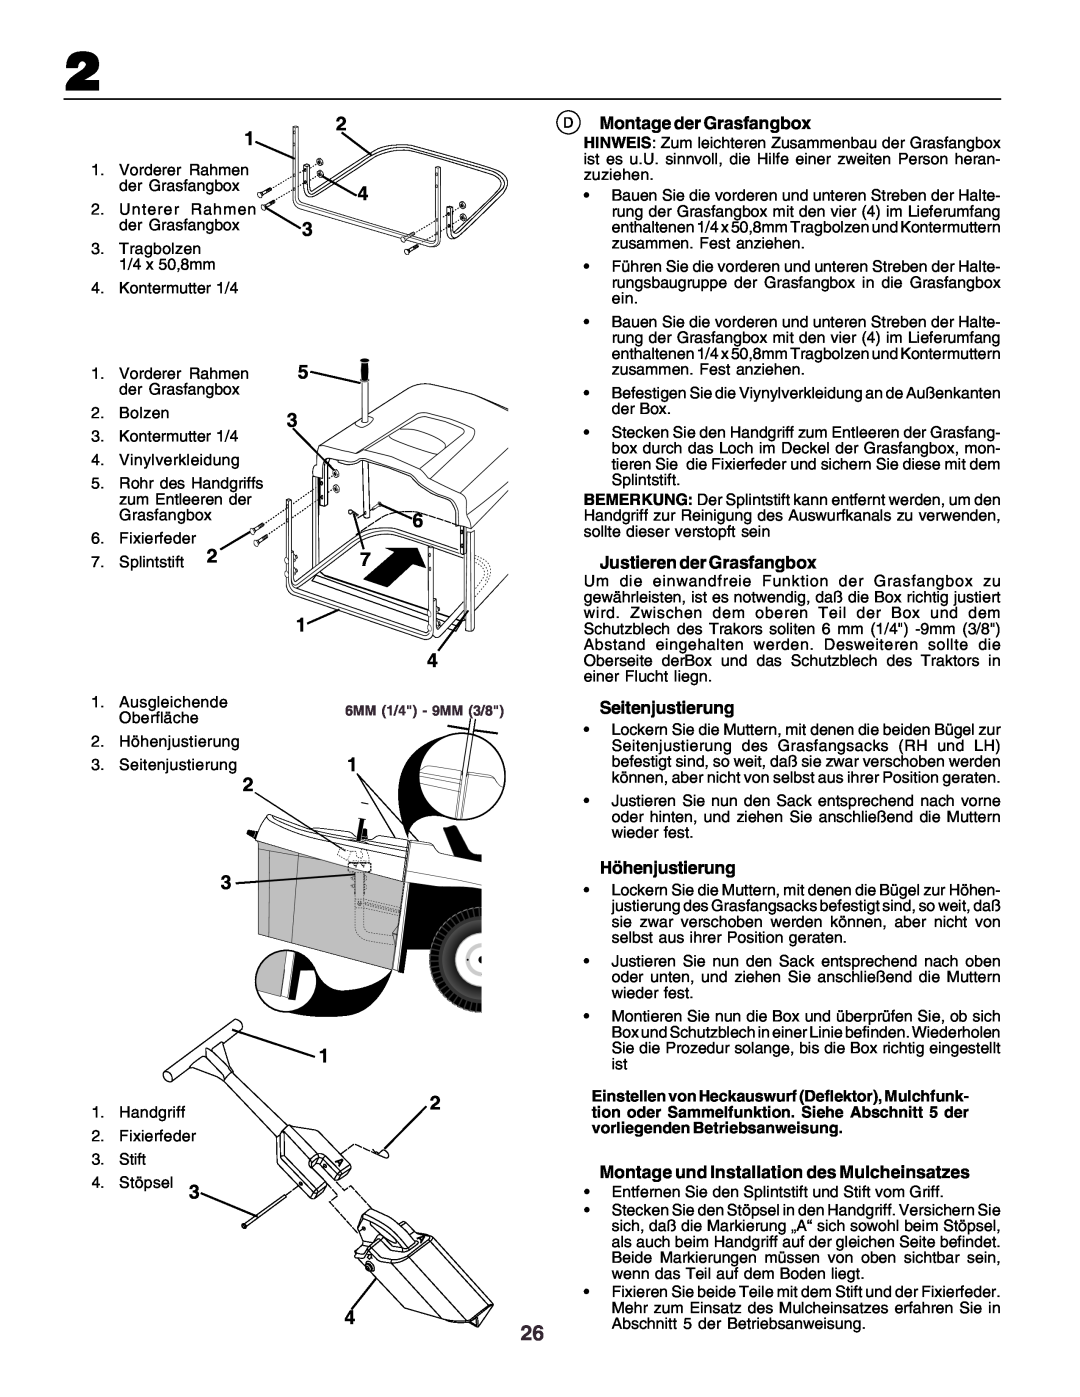 Husqvarna CT130 instruction manual Montage der Grasfangbox, Justieren der Grasfangbox, Seitenjustierung, Höhenjustierung 